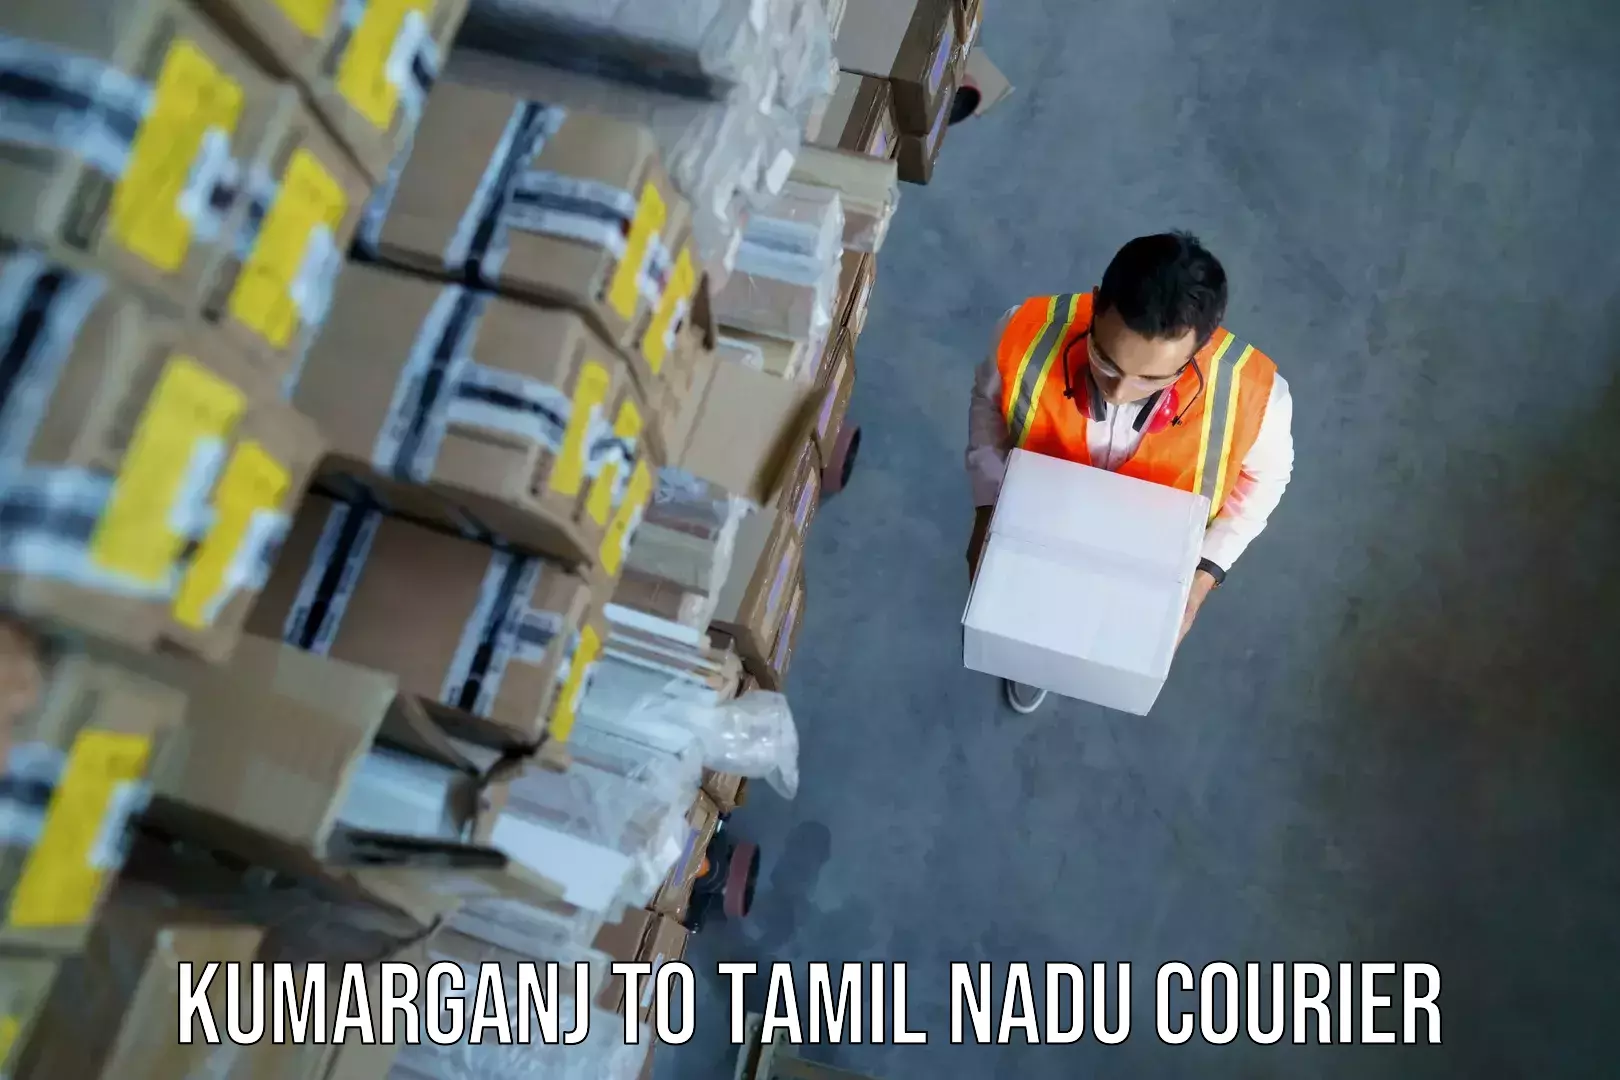 Baggage delivery management Kumarganj to Tamil Nadu